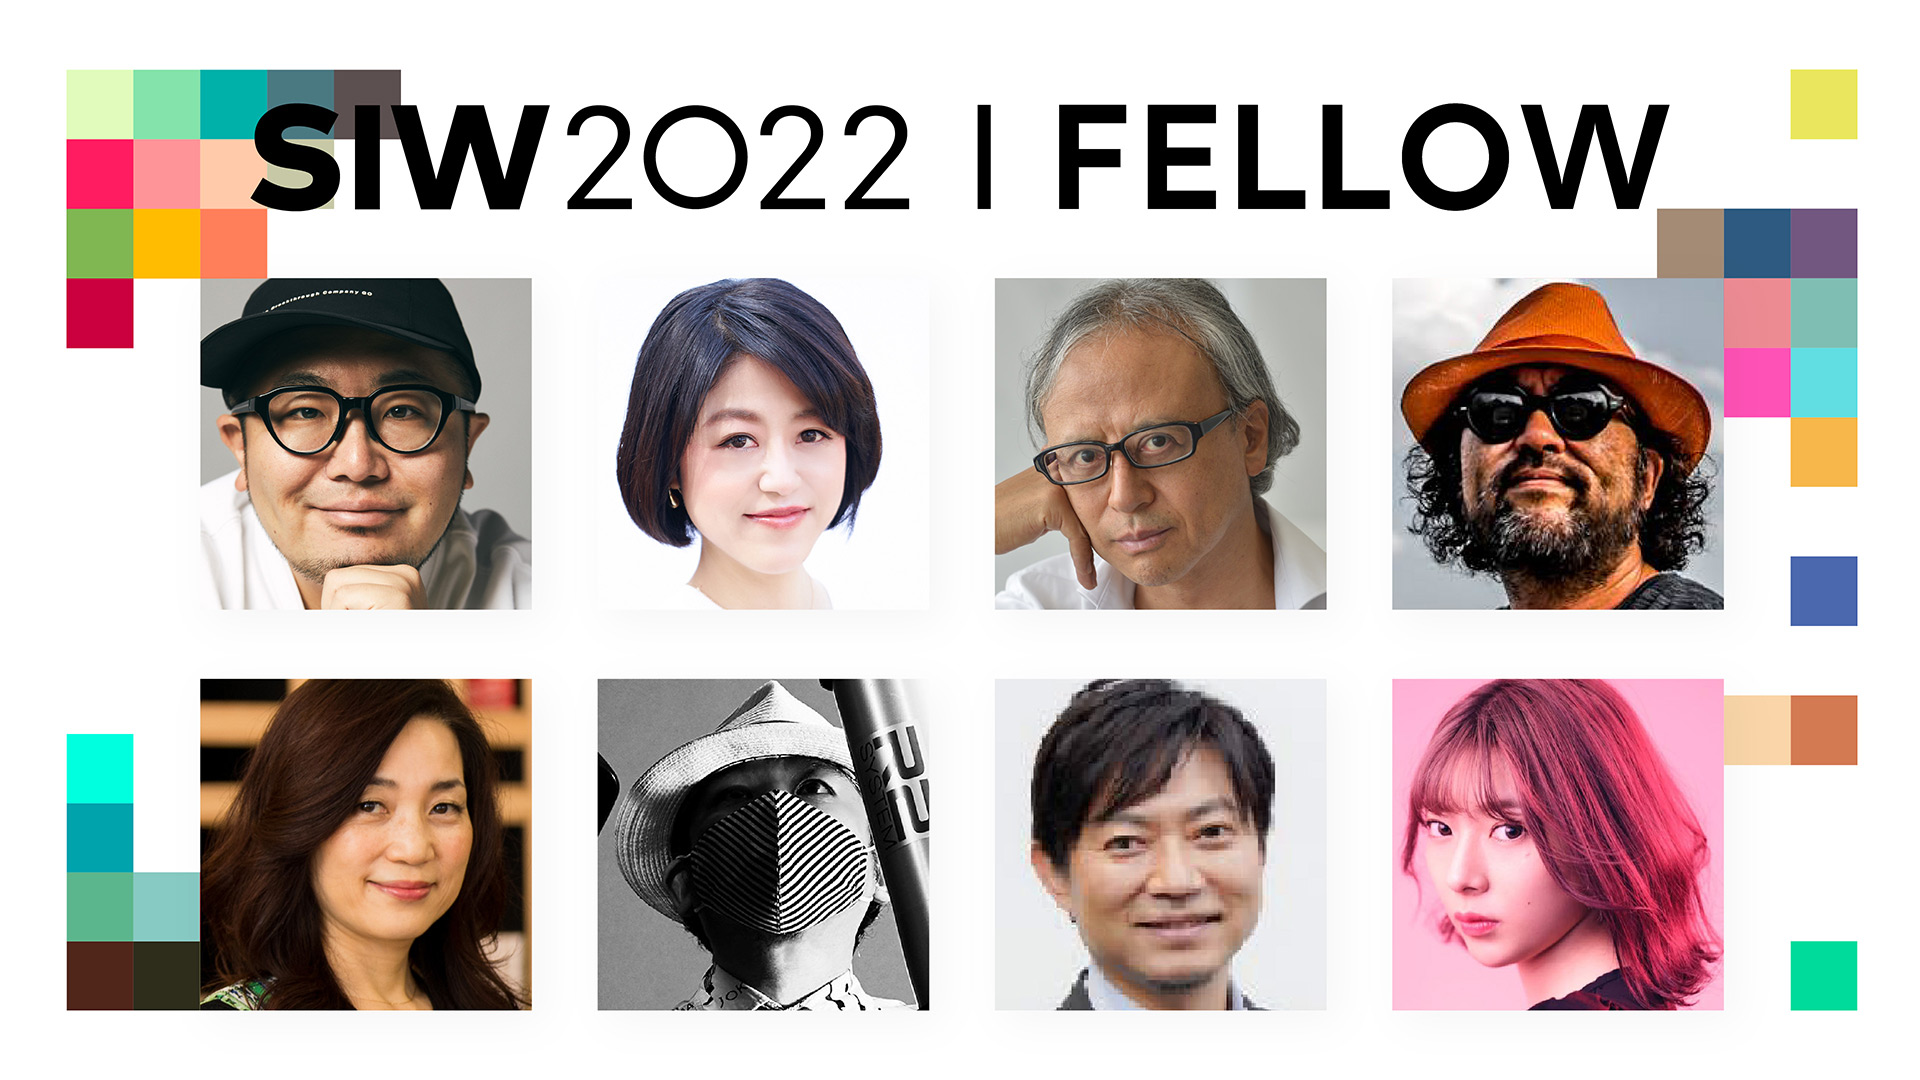 渋谷アイデア会議「SOCIAL INNOVATION WEEK SHIBUYA 2022」フェロー発表